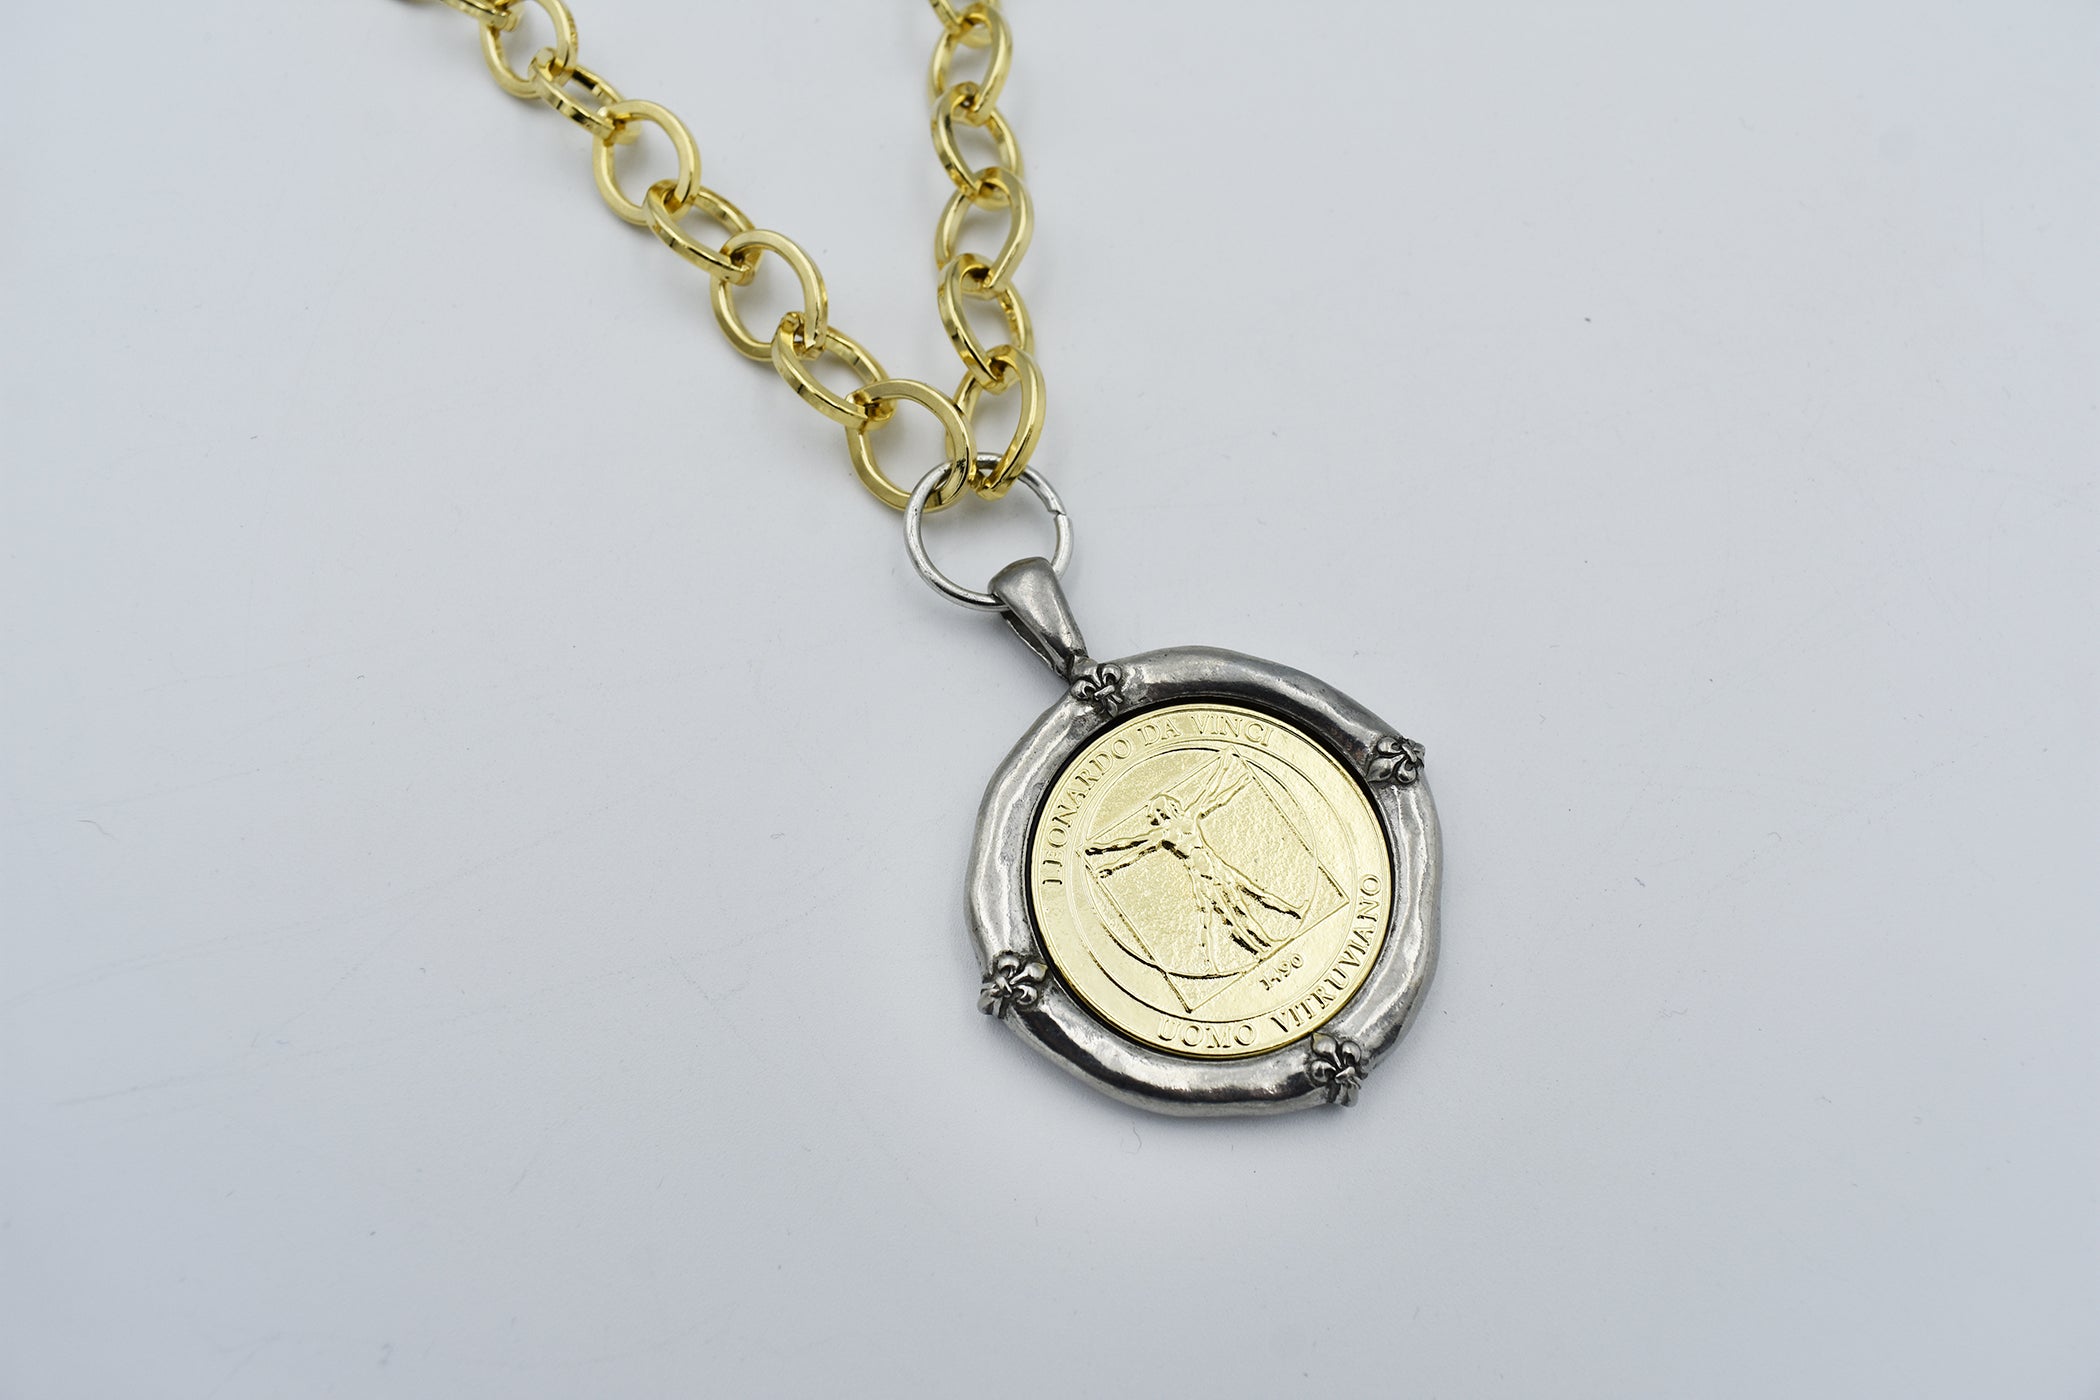 Italian Treasures Collection Gold Chain Necklace with Leonardo Da Vinci